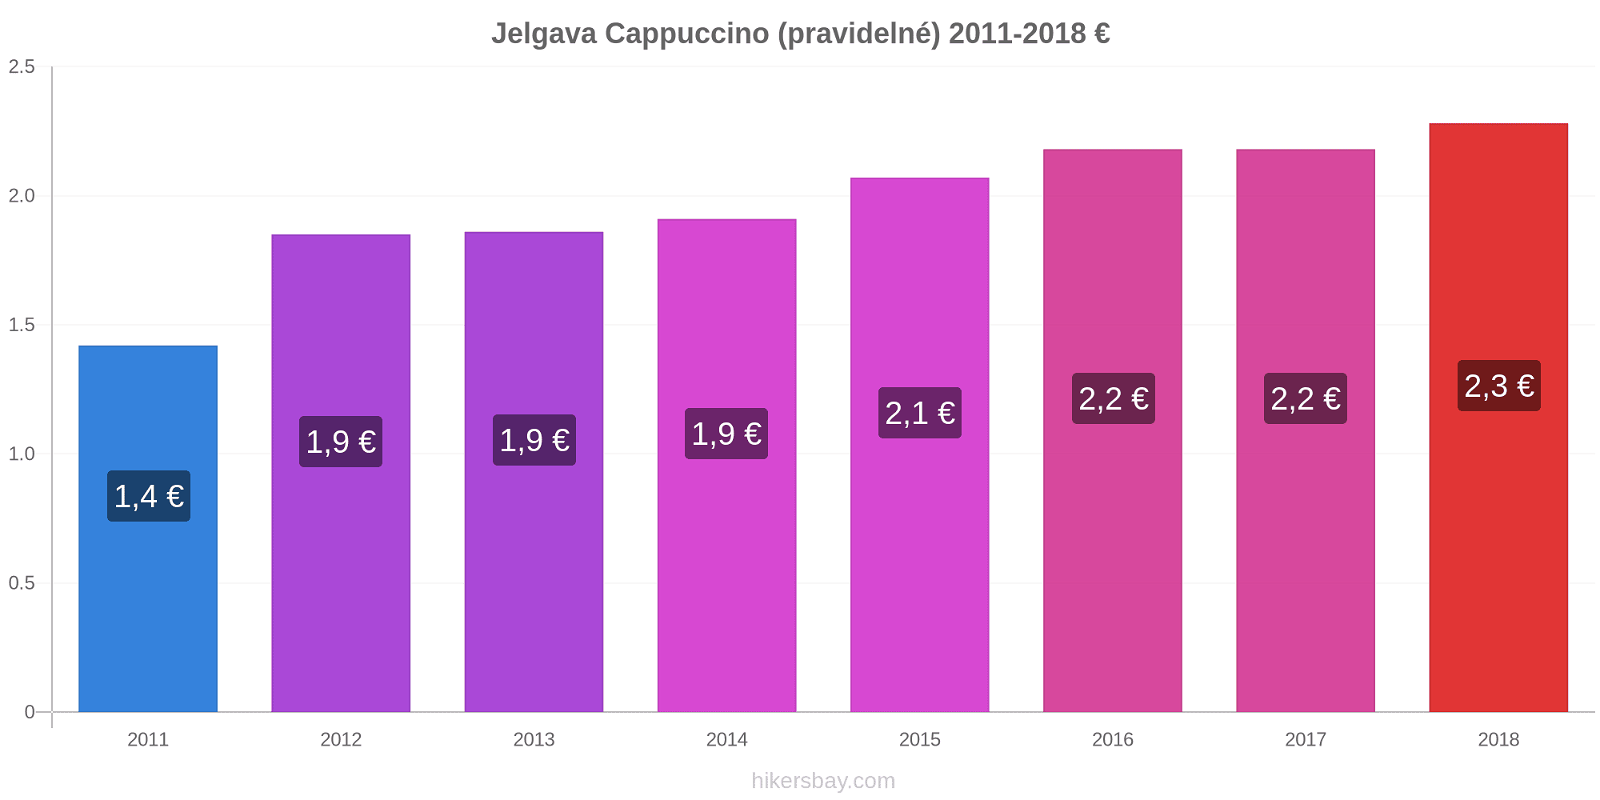 Jelgava změny cen Cappuccino (pravidelné) hikersbay.com